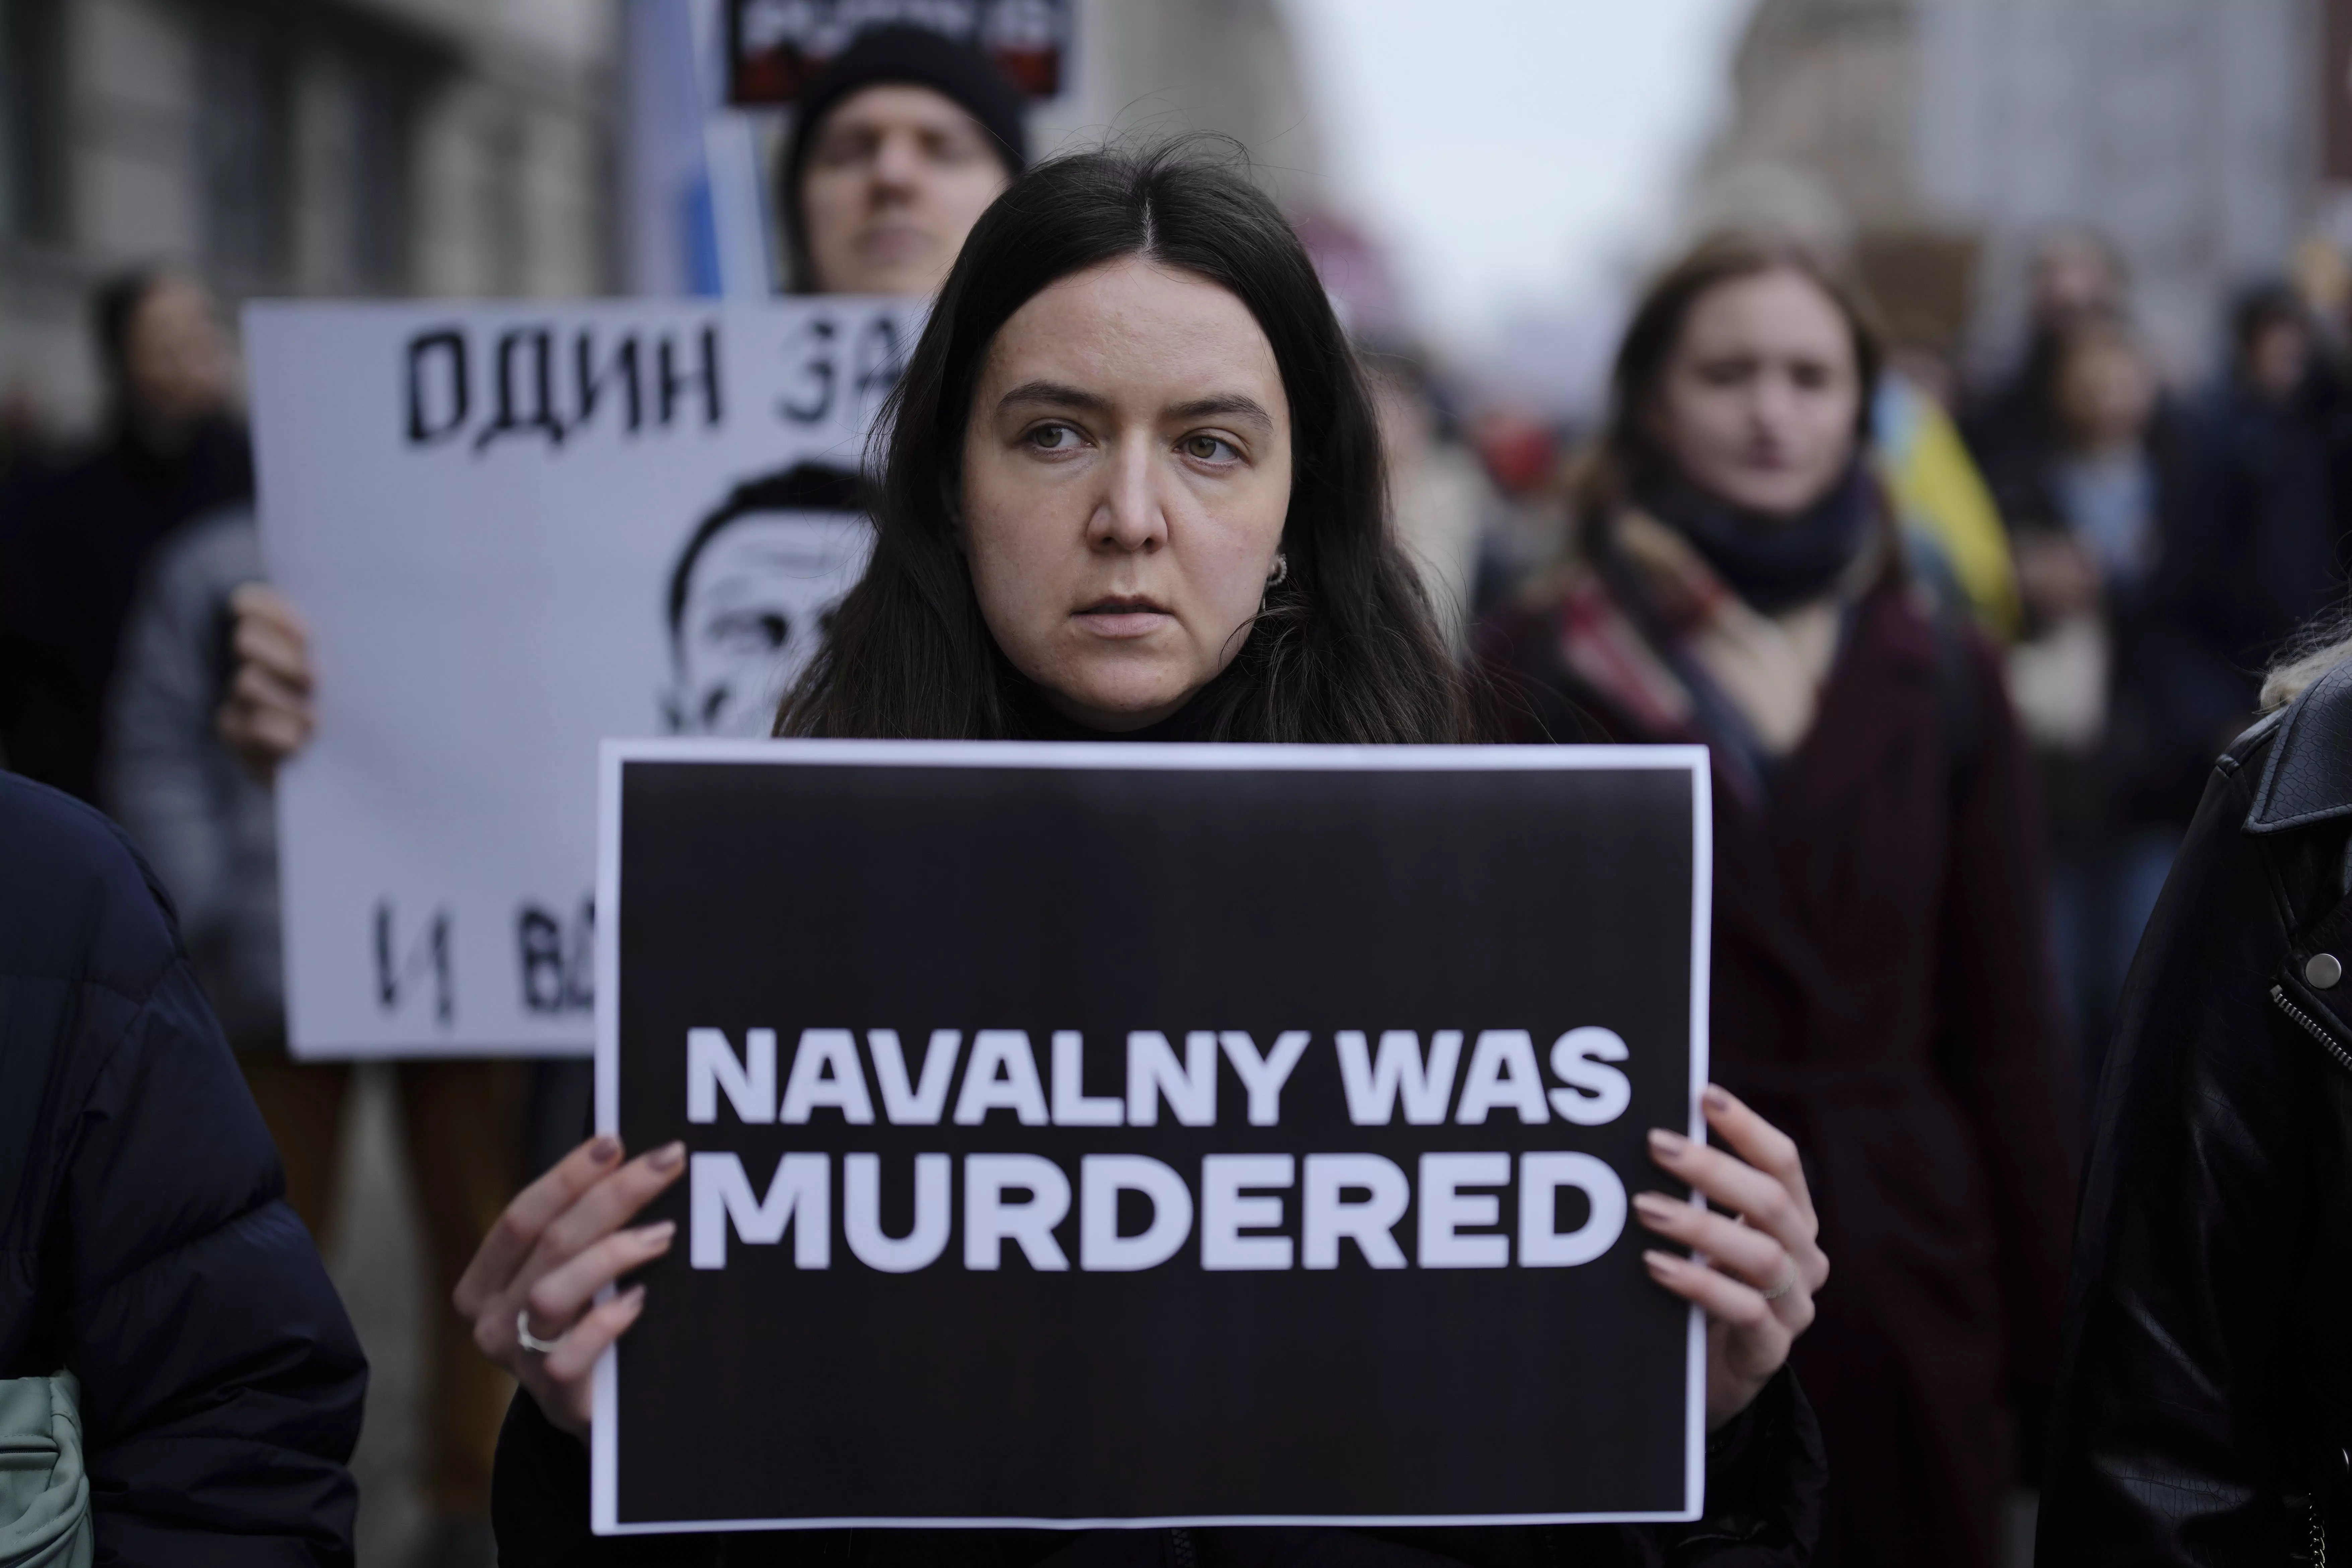 DC Edit | Navalny a heroic figure of hope